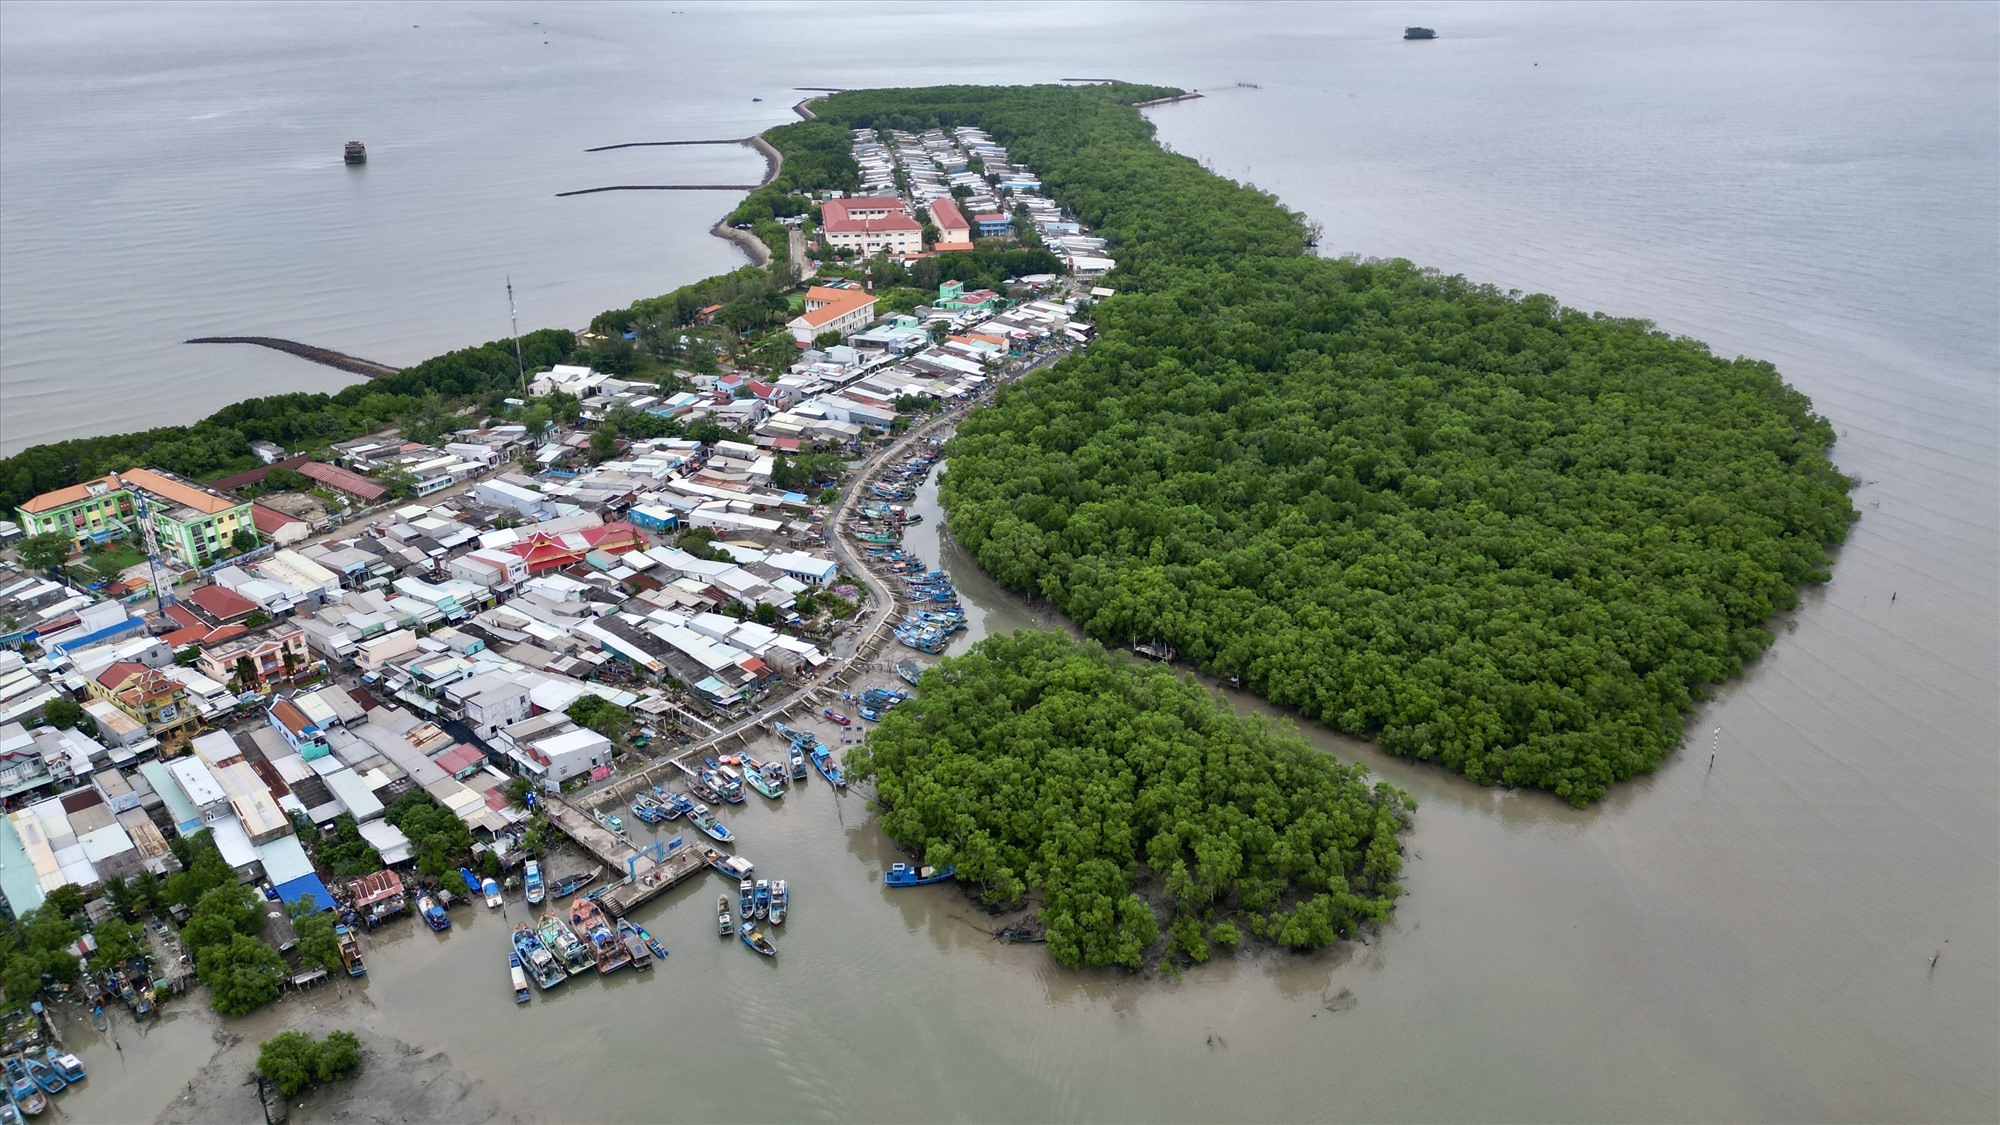 Đảo được bao bọc bởi rừng phòng hộ, với diện tích rộng hơn 13.000 ha (18% diện tích Cần Giờ), có hơn 1.130 hộ với khoảng 4.500 người.